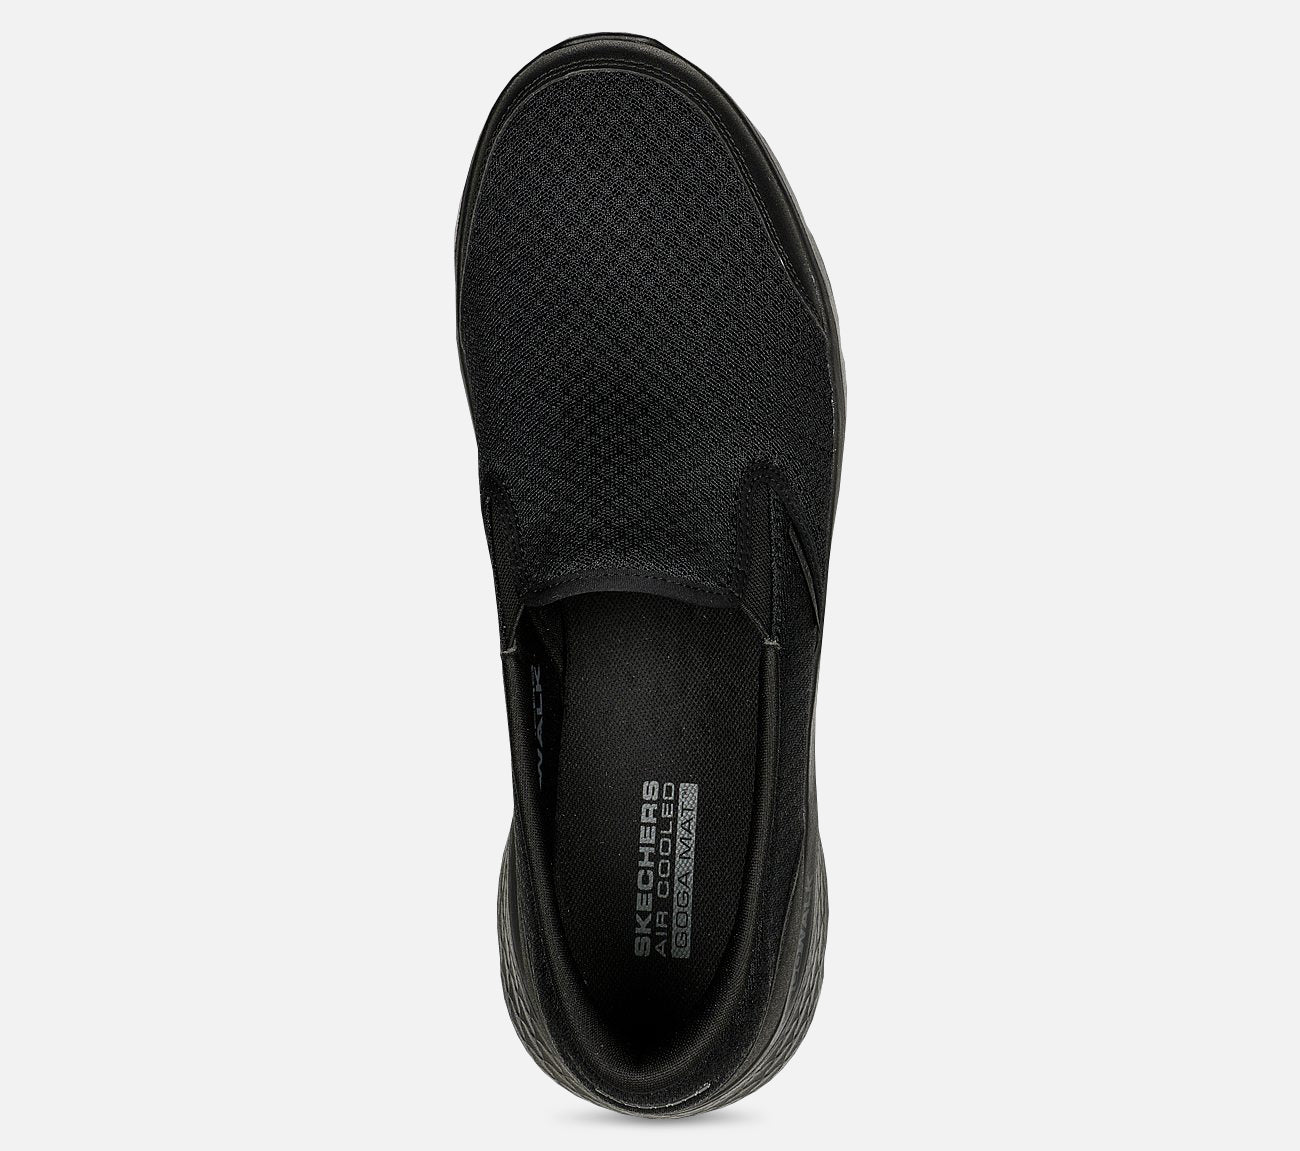 GO WALK Flex - Request Shoe Skechers